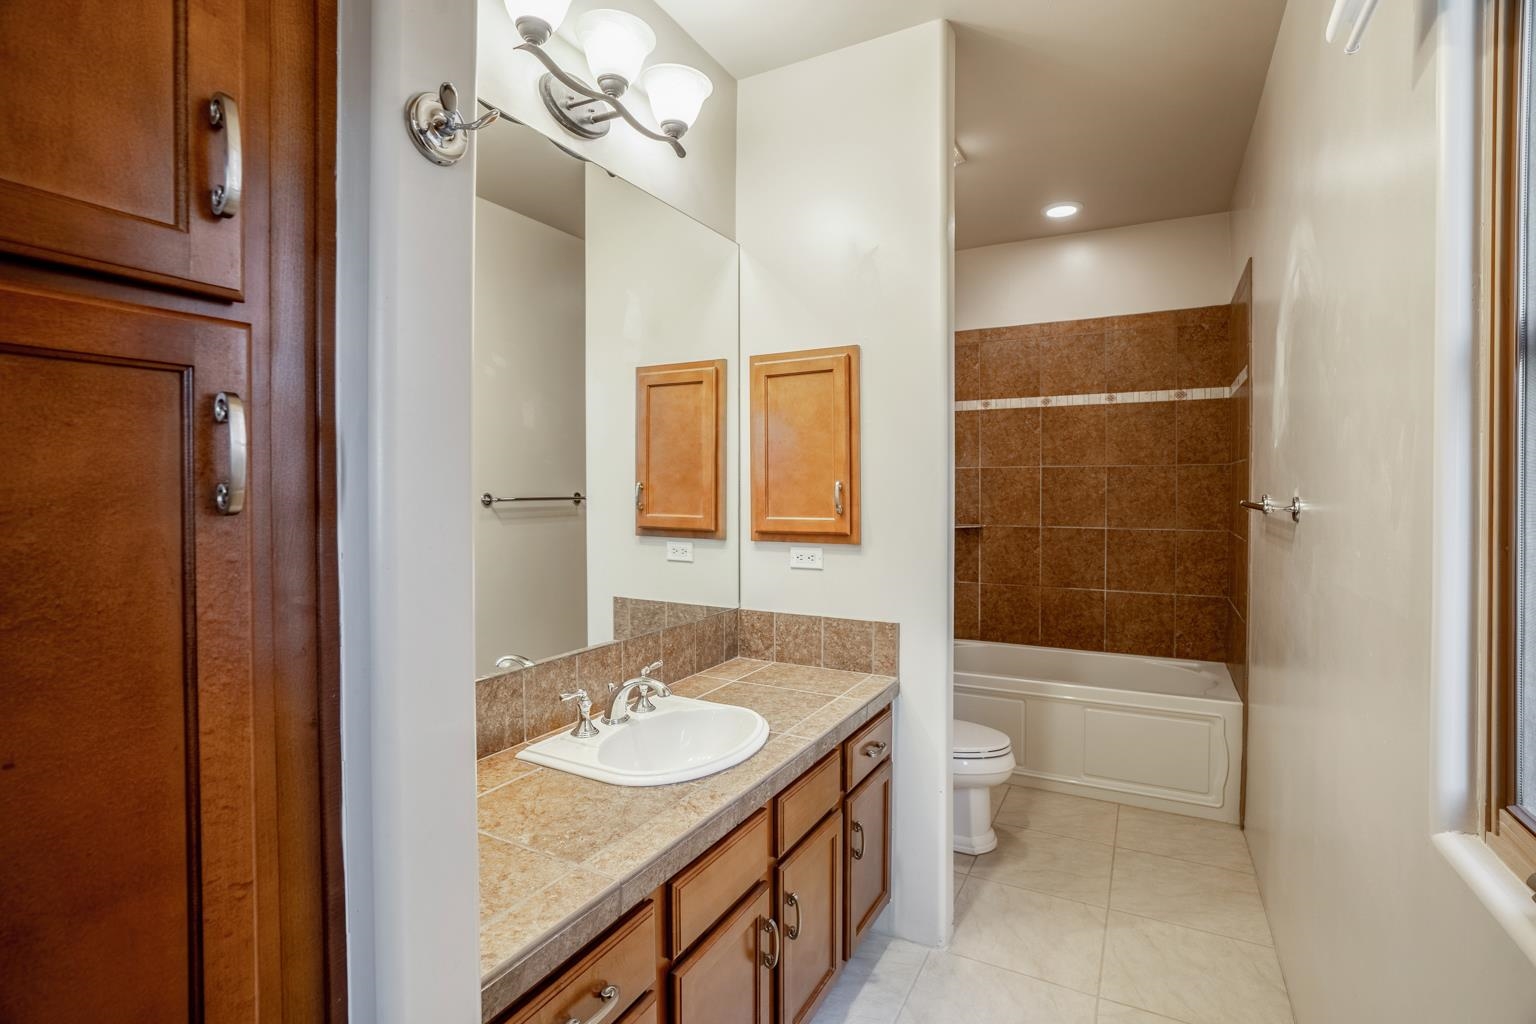 1620 Villa Strada, Santa Fe, New Mexico 87506, 3 Bedrooms Bedrooms, ,4 BathroomsBathrooms,Residential,For Sale,1620 Villa Strada,202201431